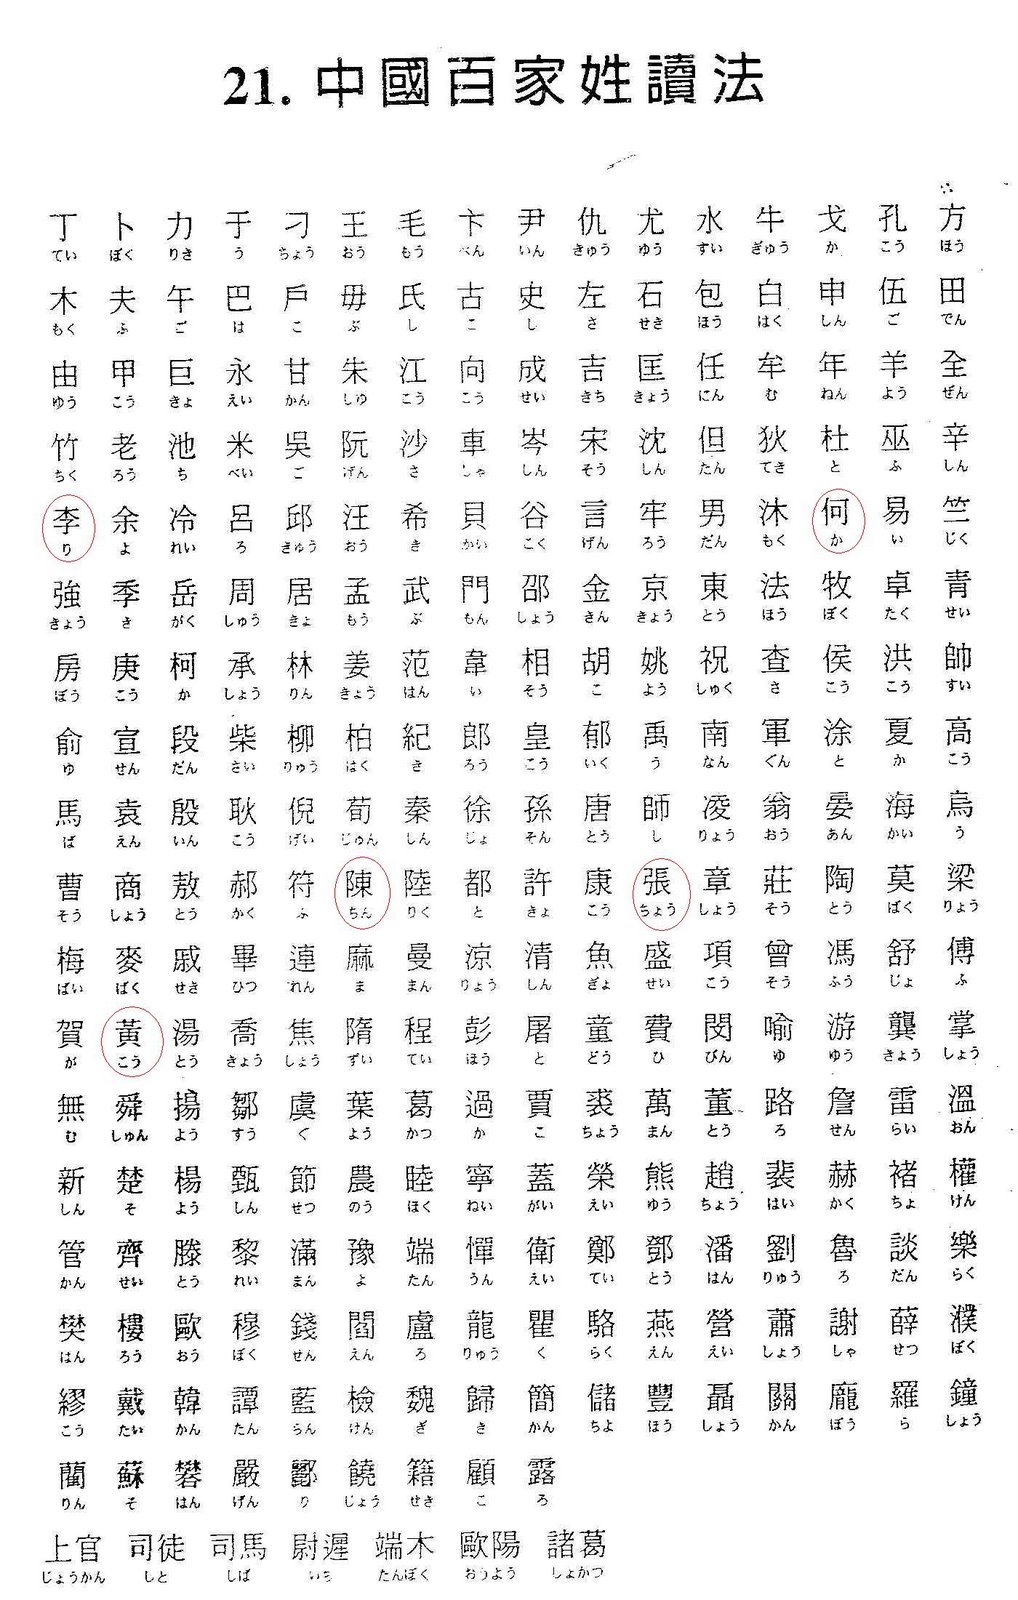 [chinese_100_last_names.jpg]